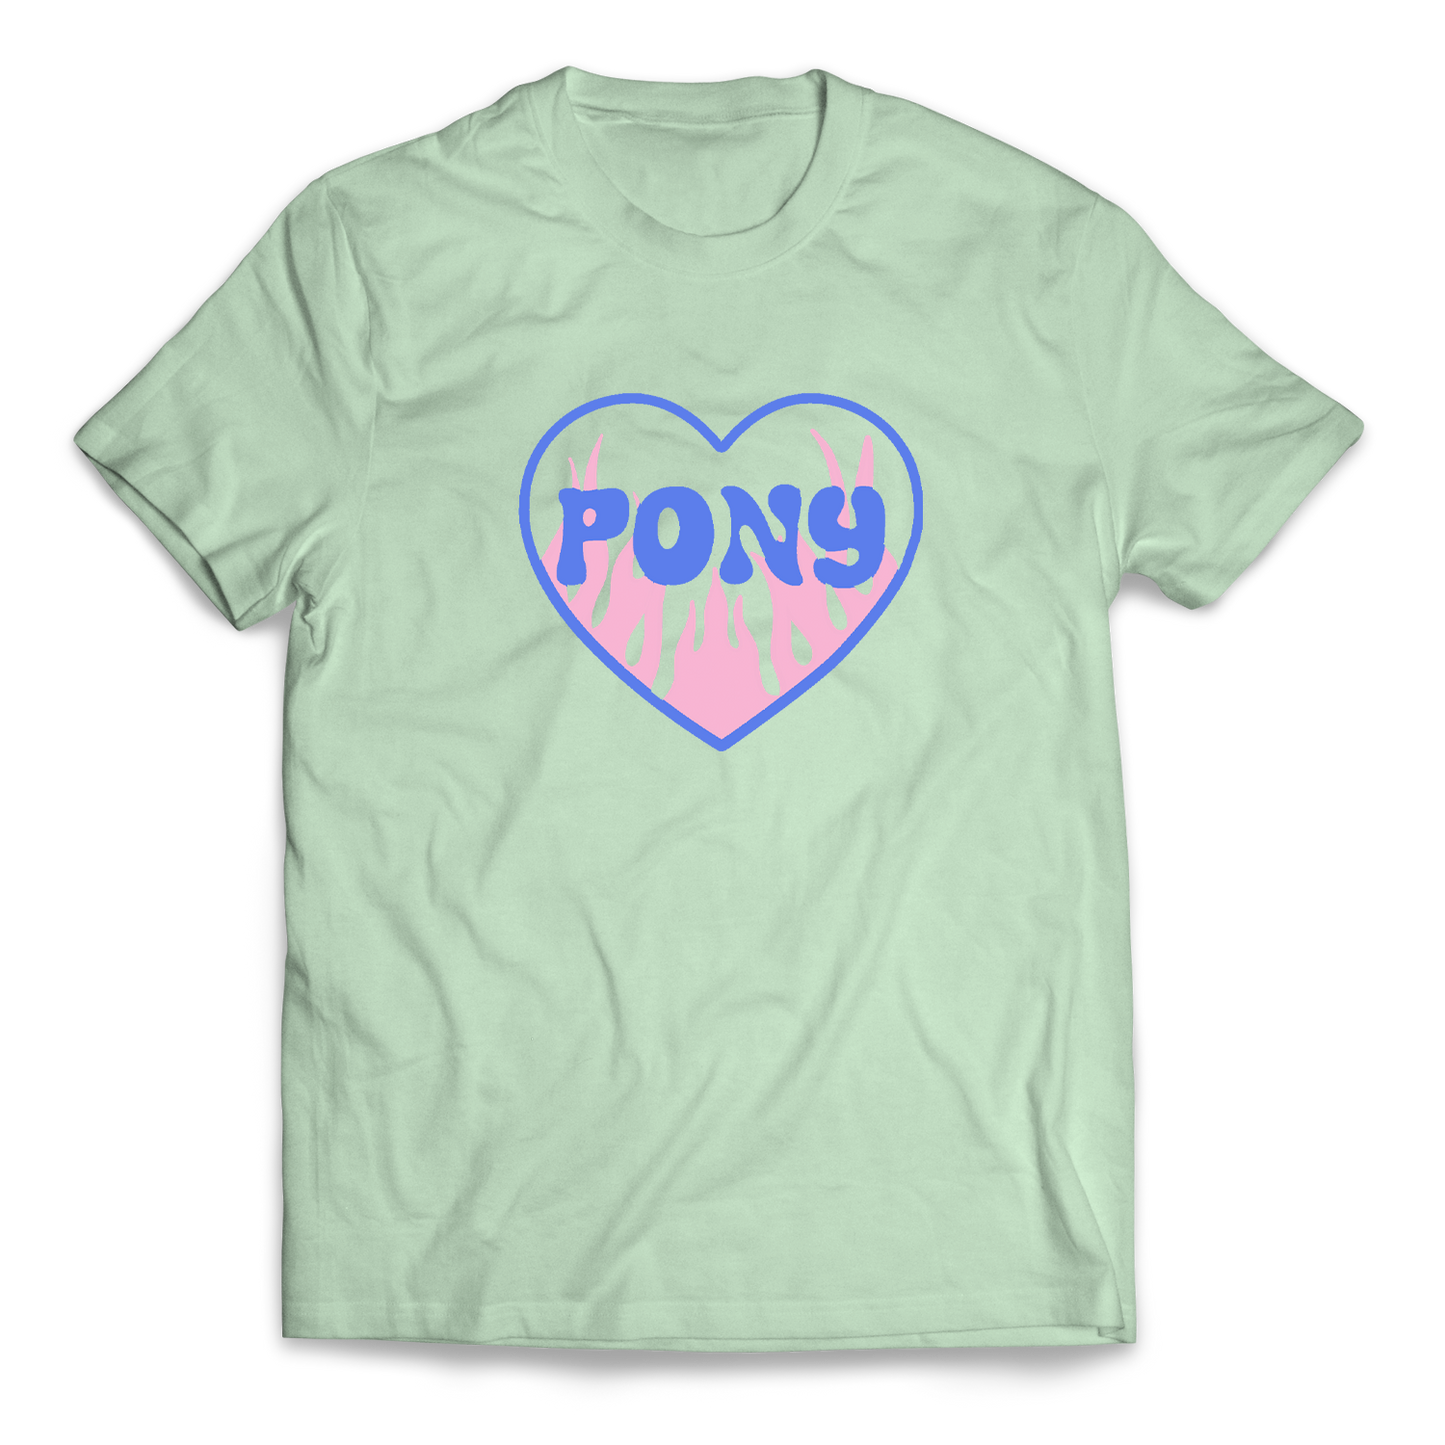 PONY - "Heart" T-Shirt